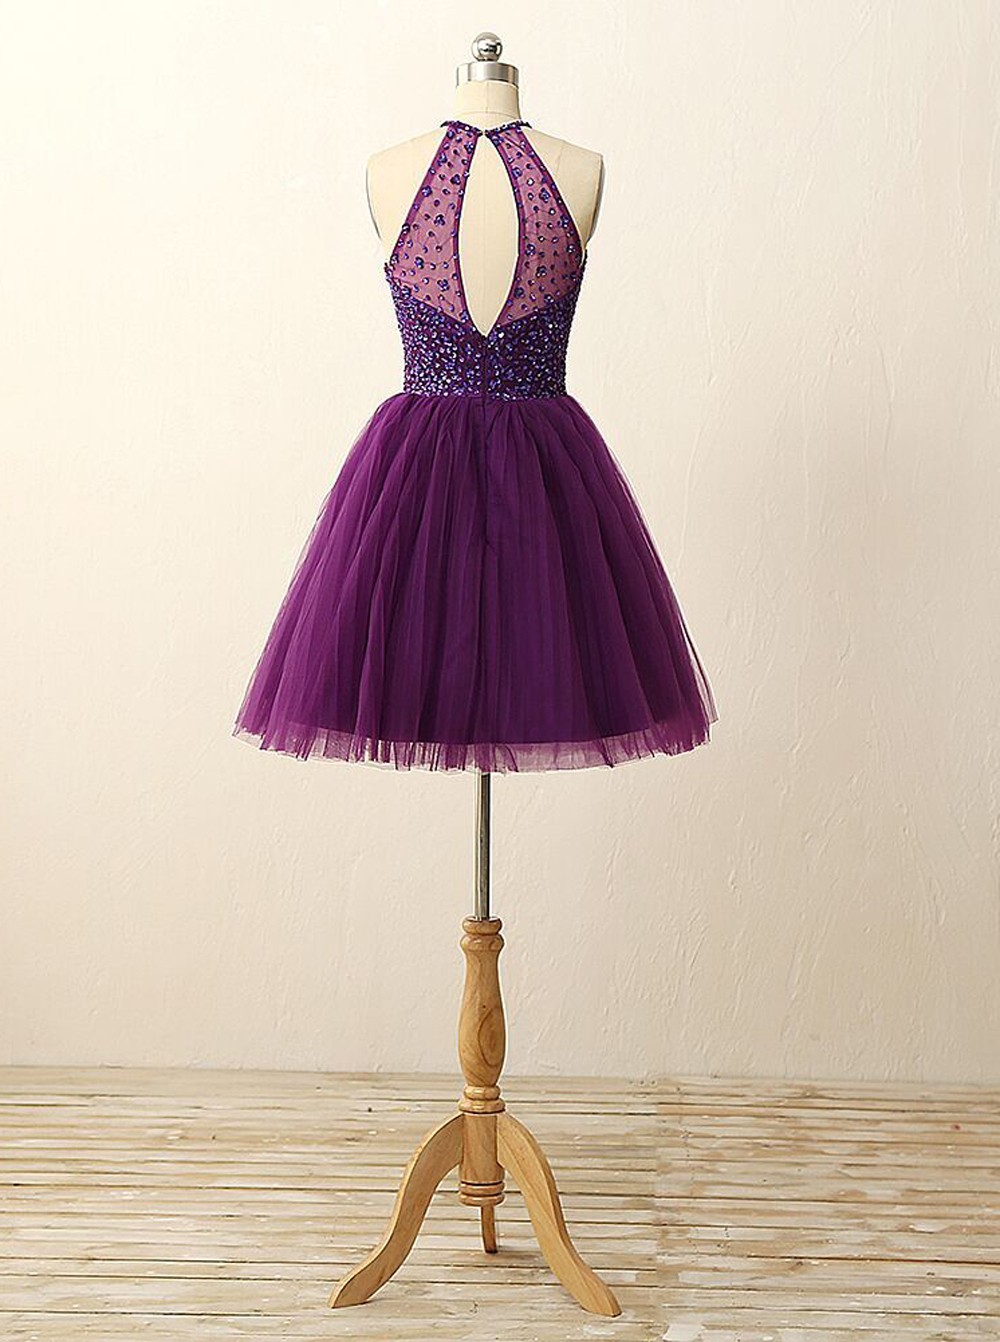 Beautiful Purple Short Prom Dress Backless Prom Dress Purple